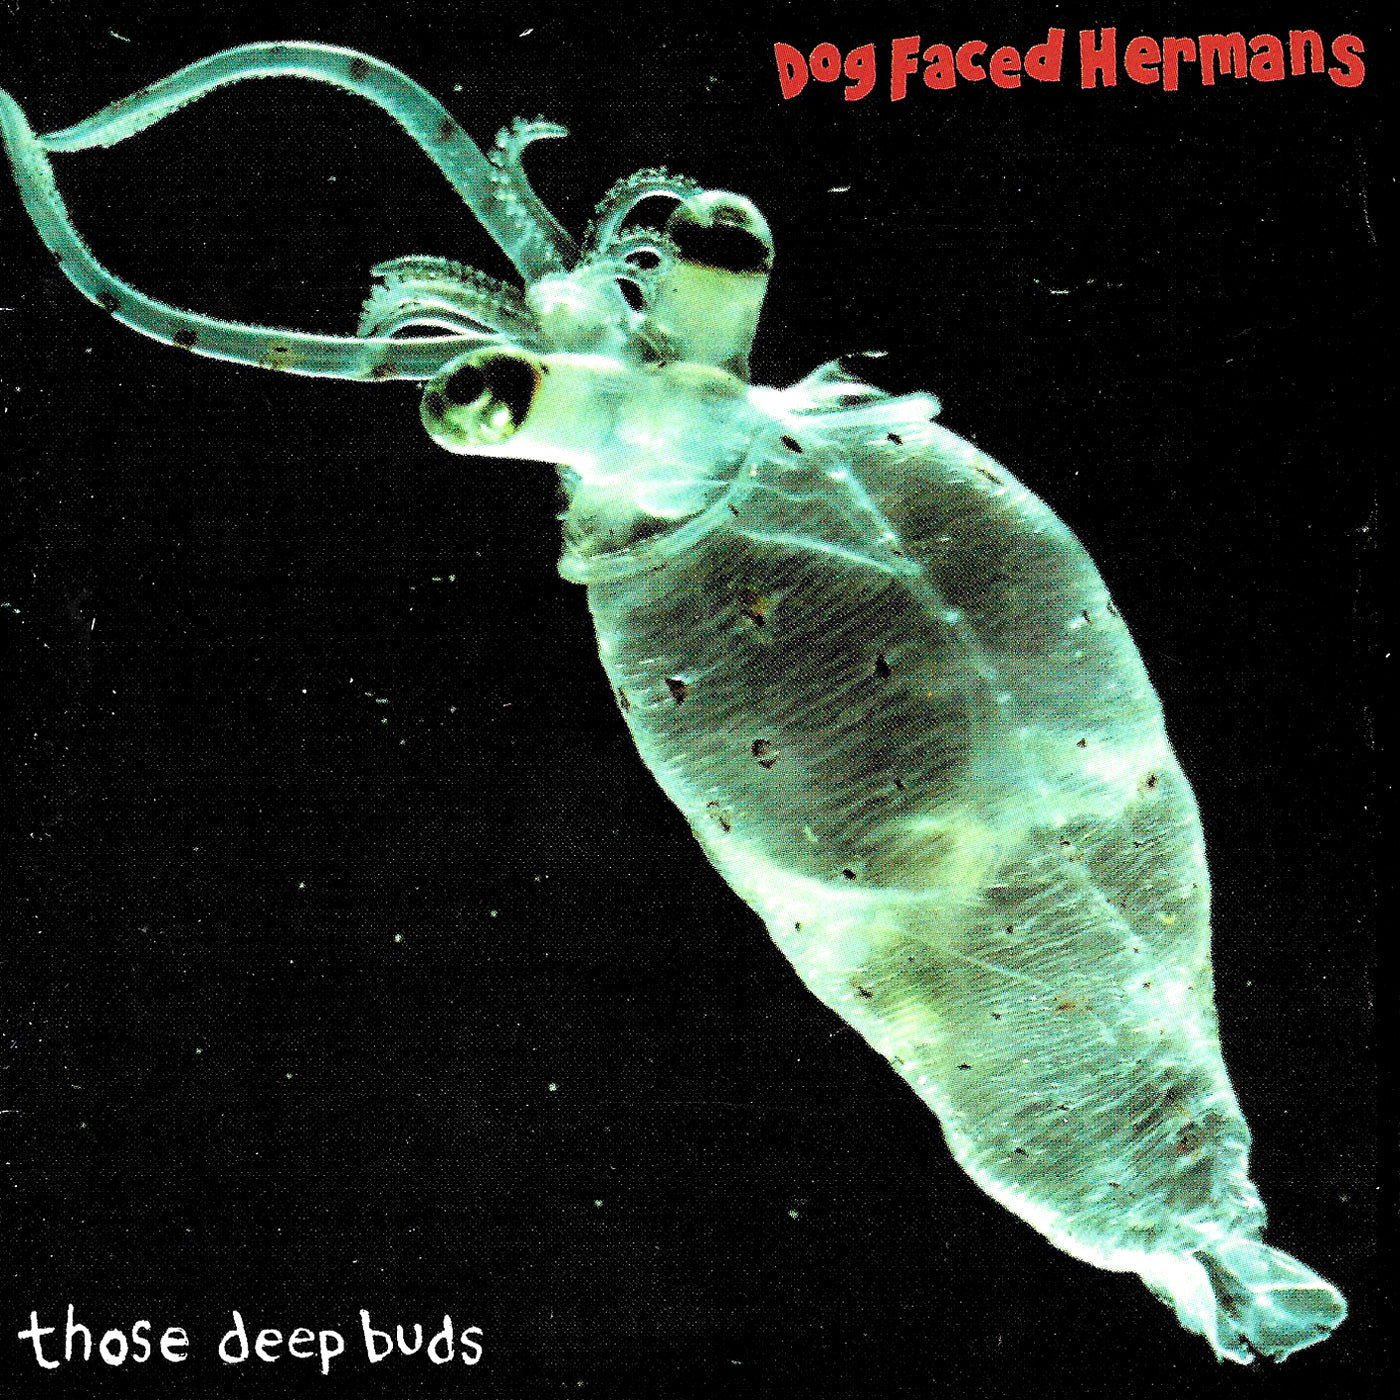 v151 - Dog Faced Hermans - "Those Deep Buds"